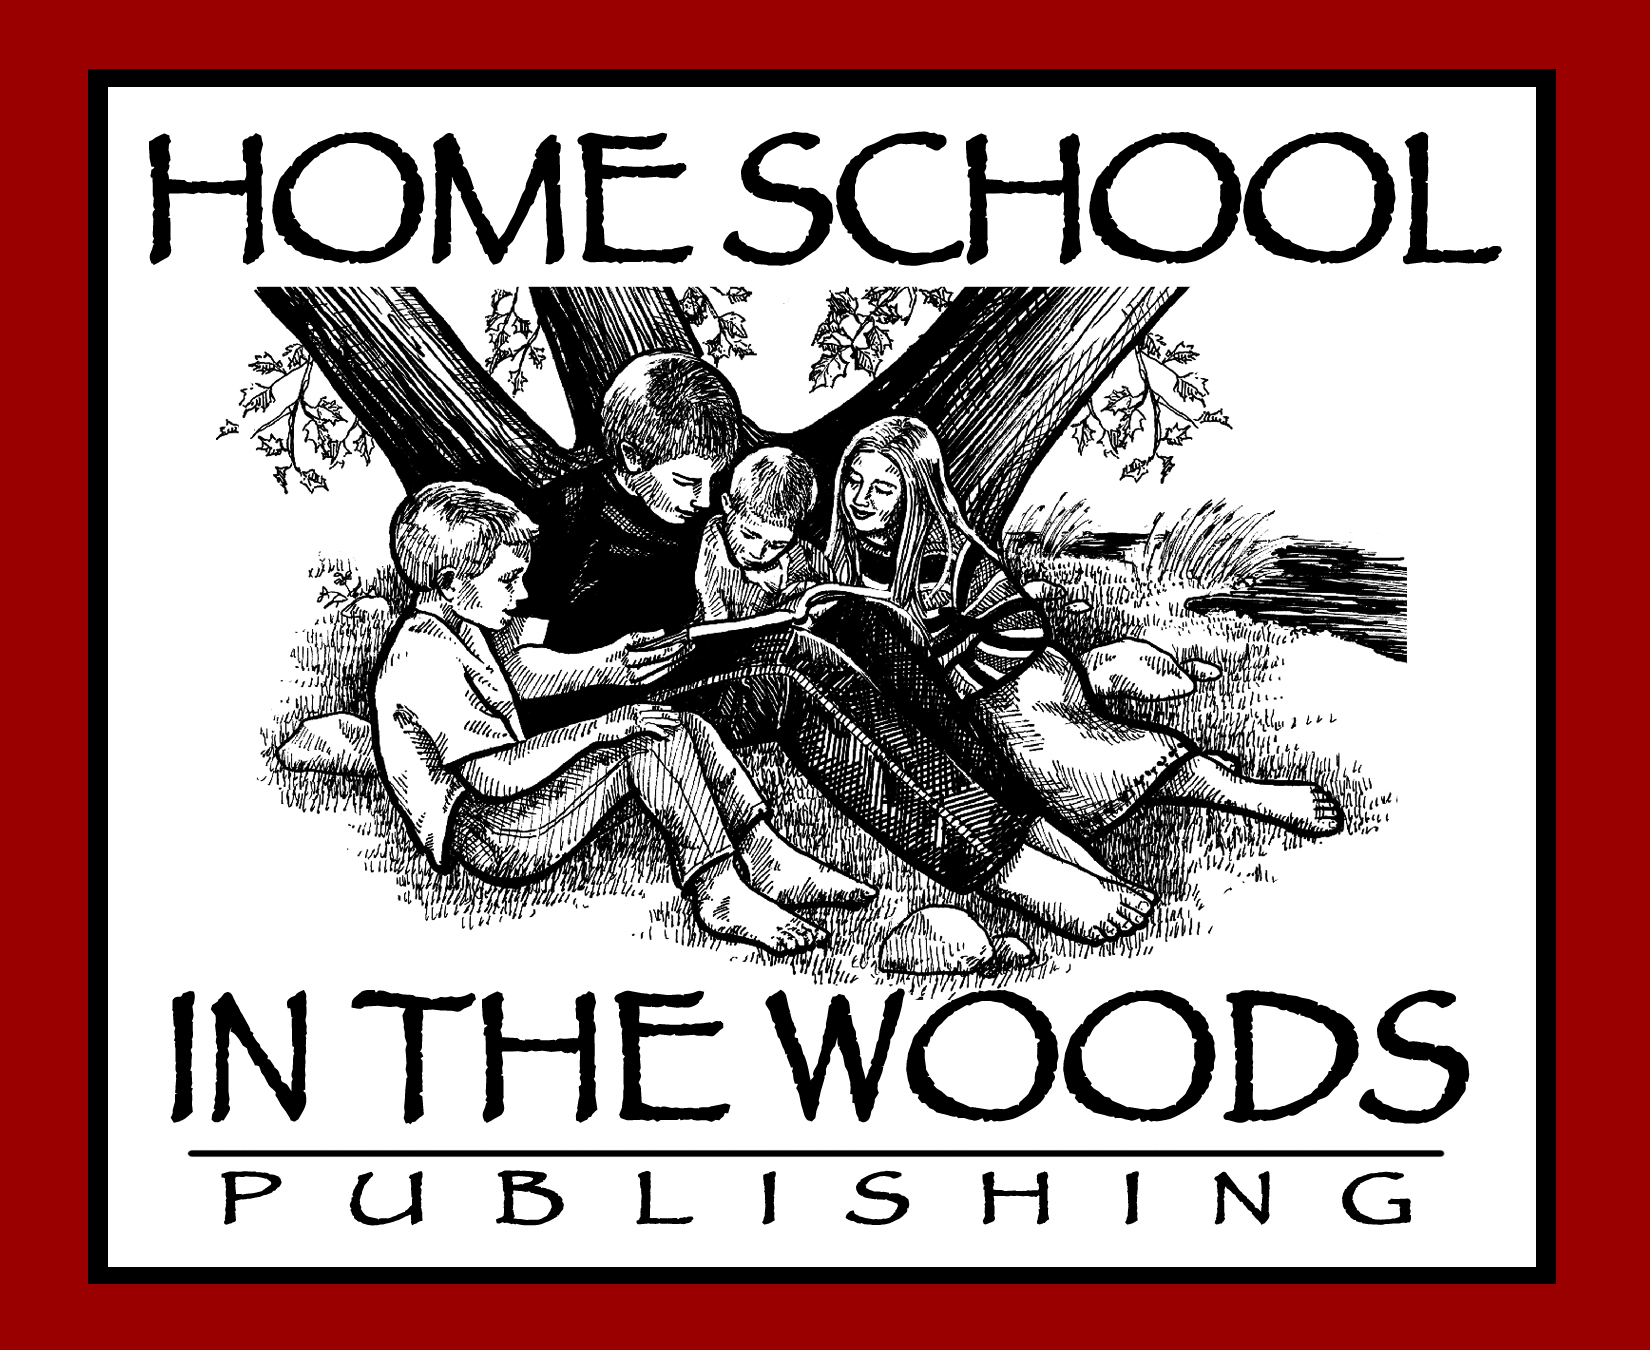 Homeschool in the Woods